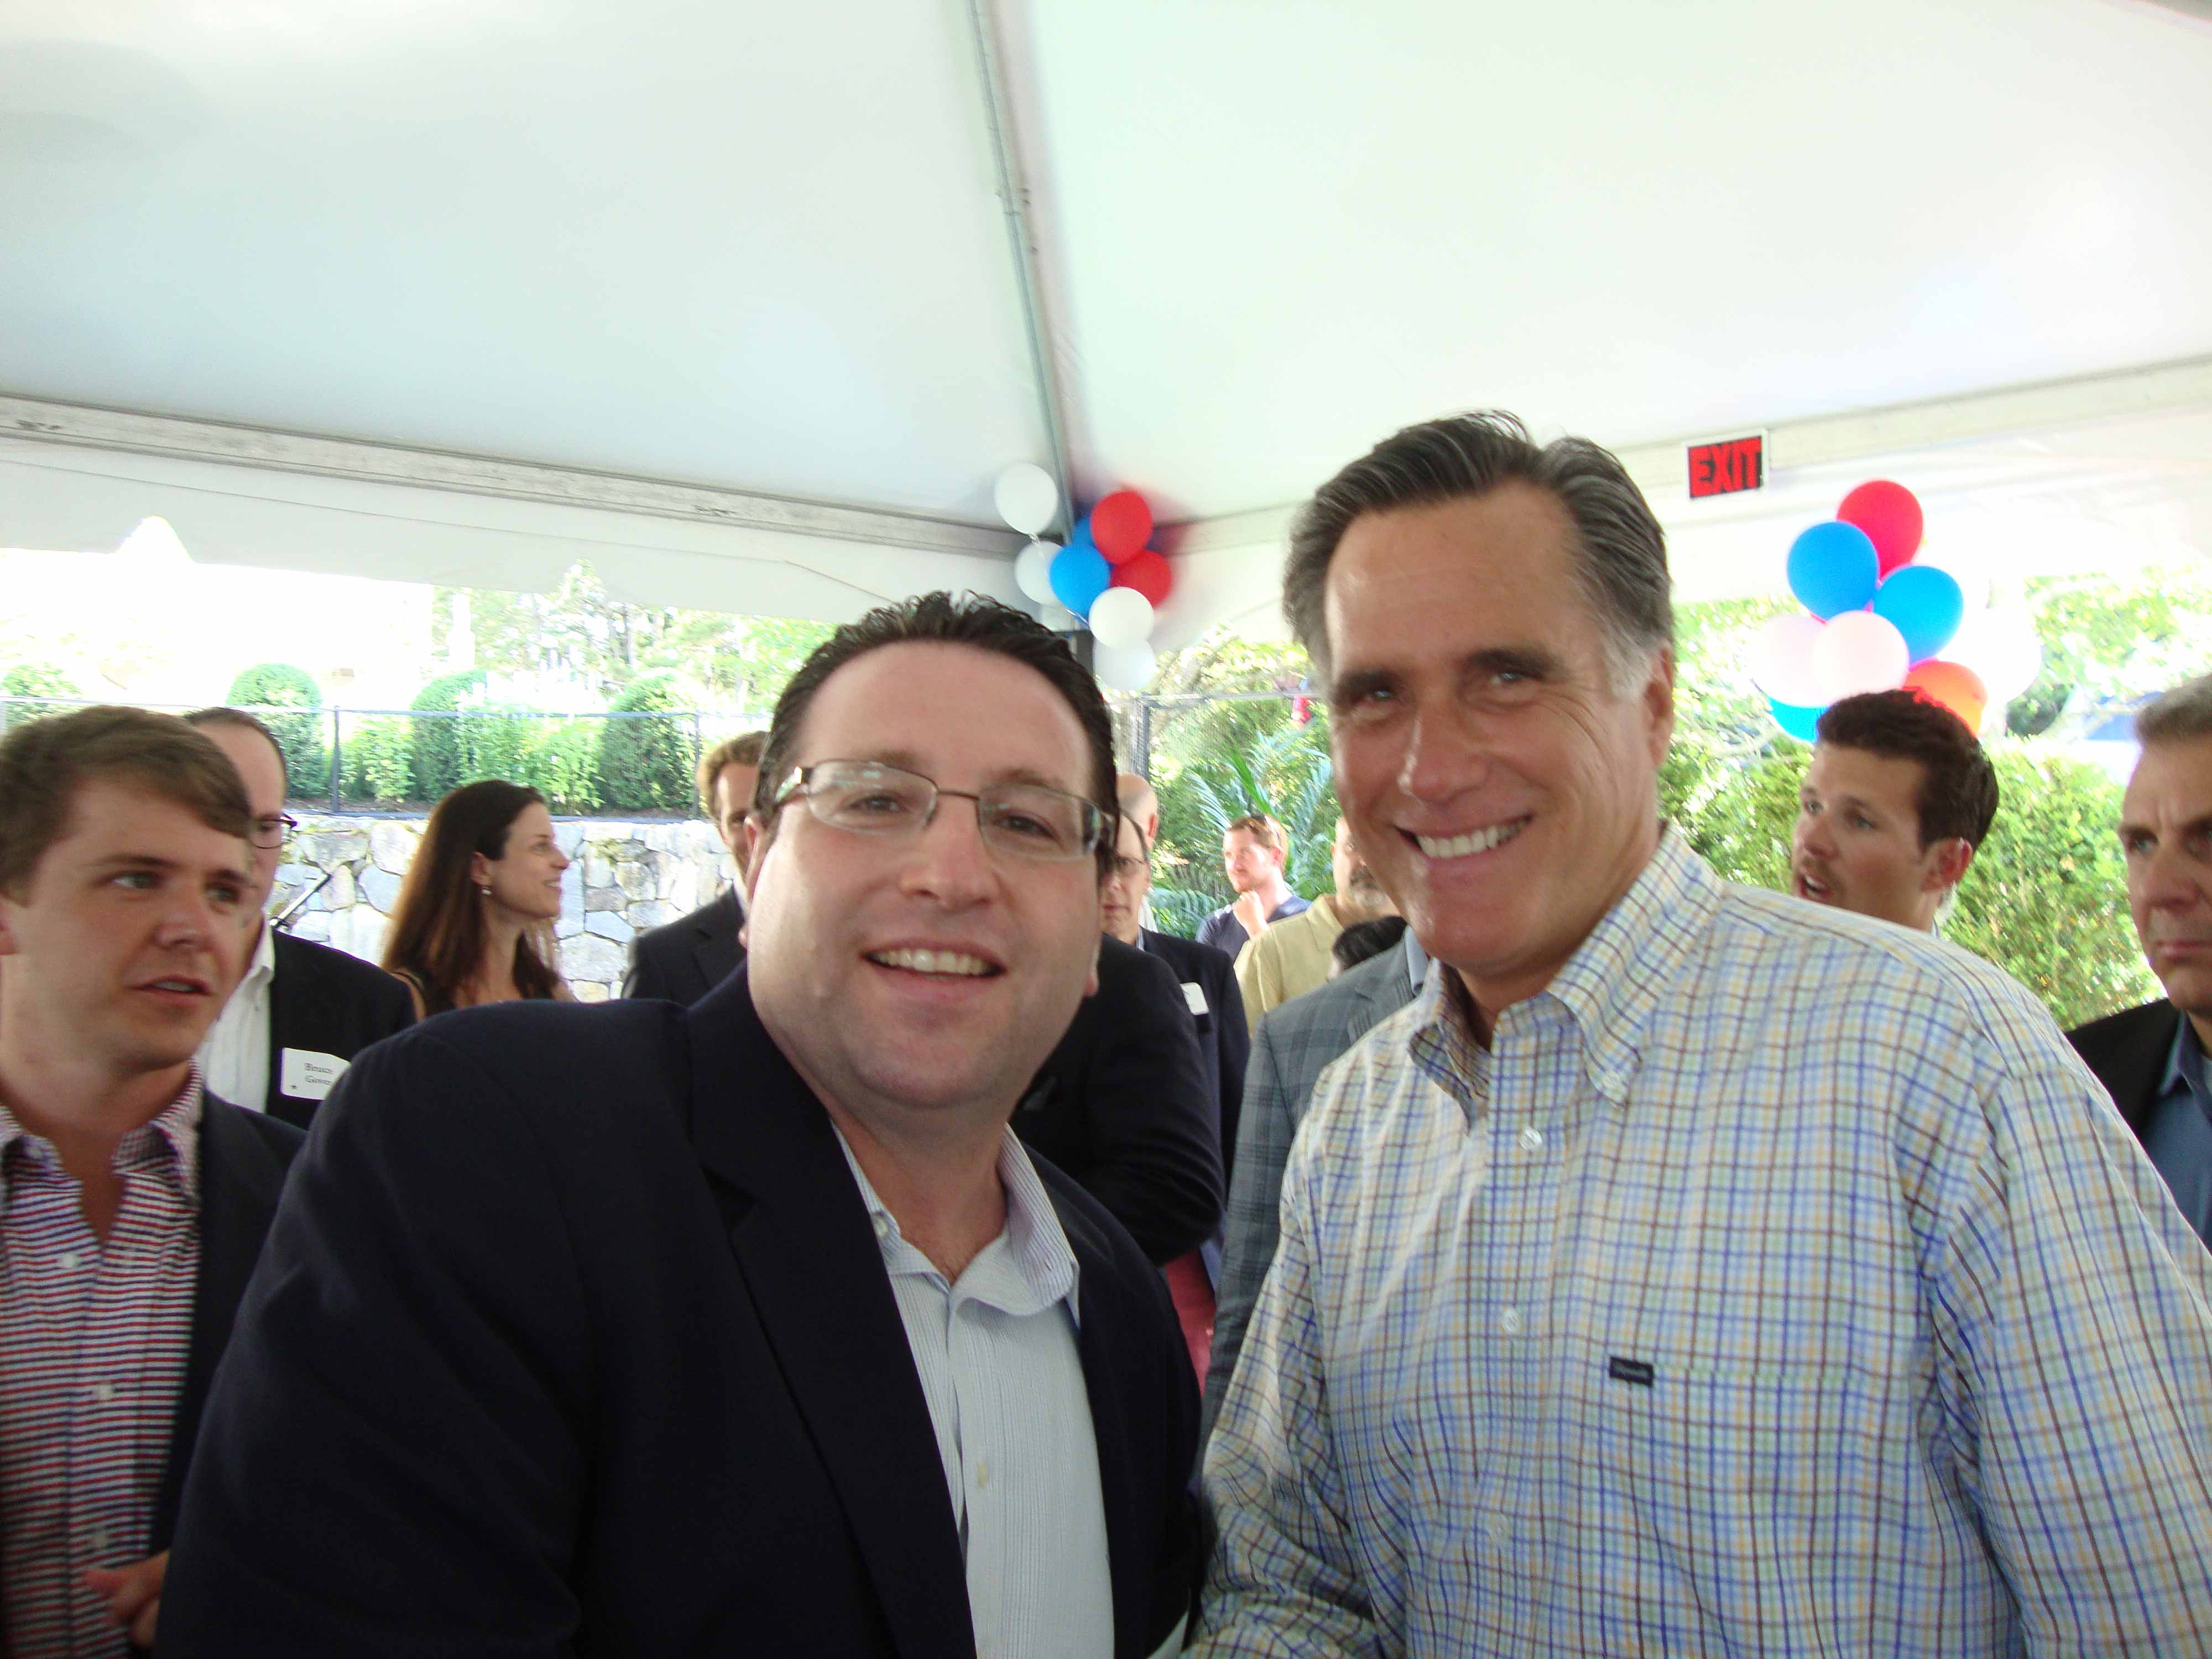 David Schwartz with Mitt Romney